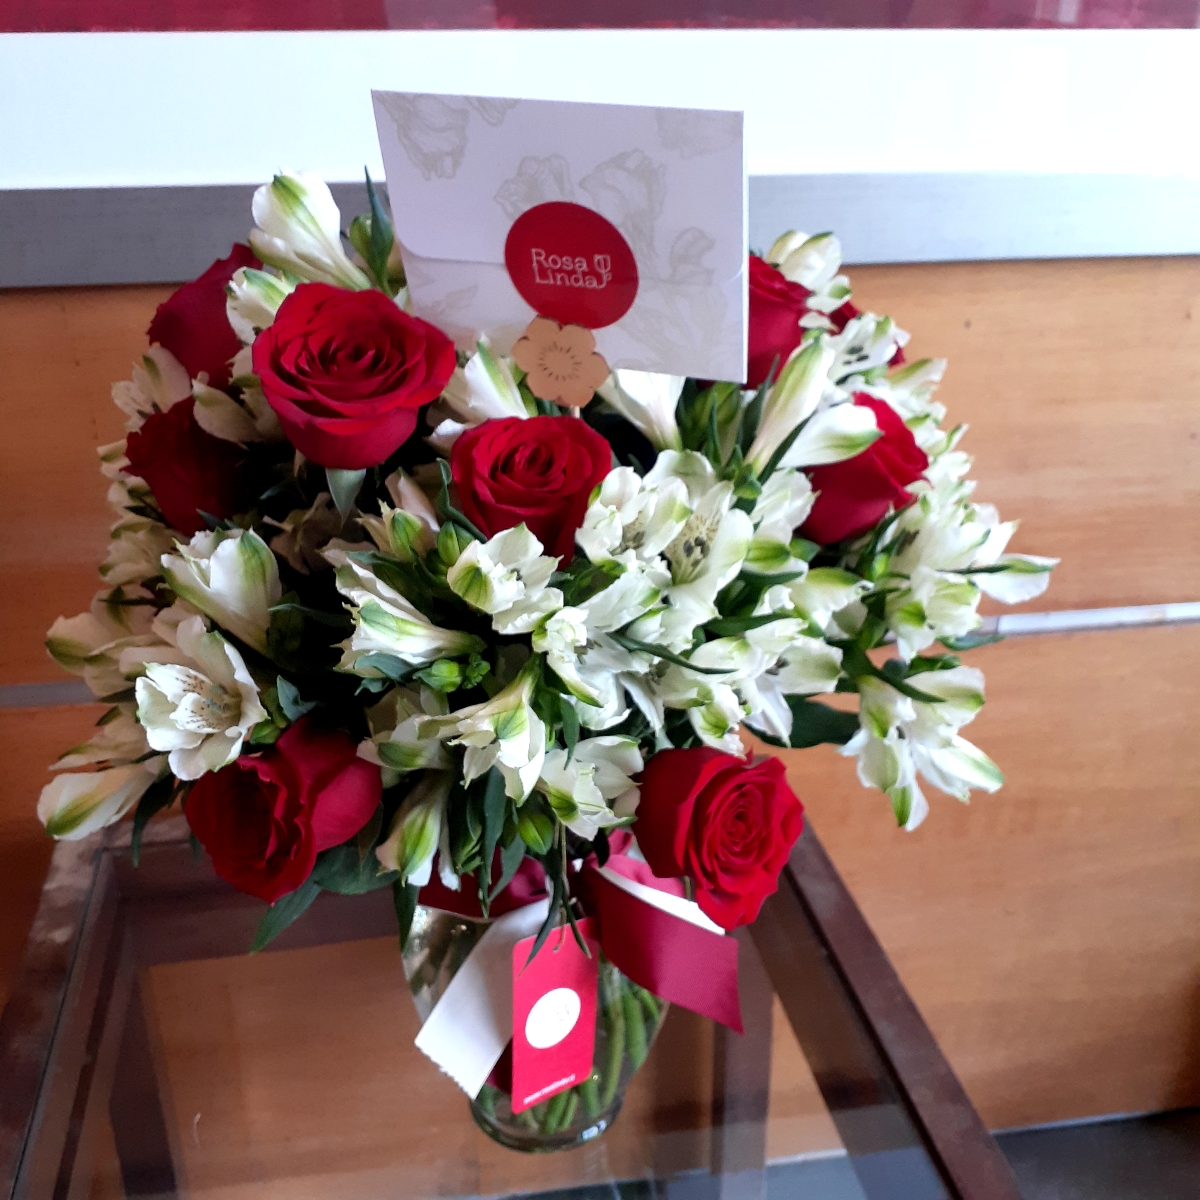 Arreglo floral en florero ánfora con rosas rojas y astromelias - Pedido 245342